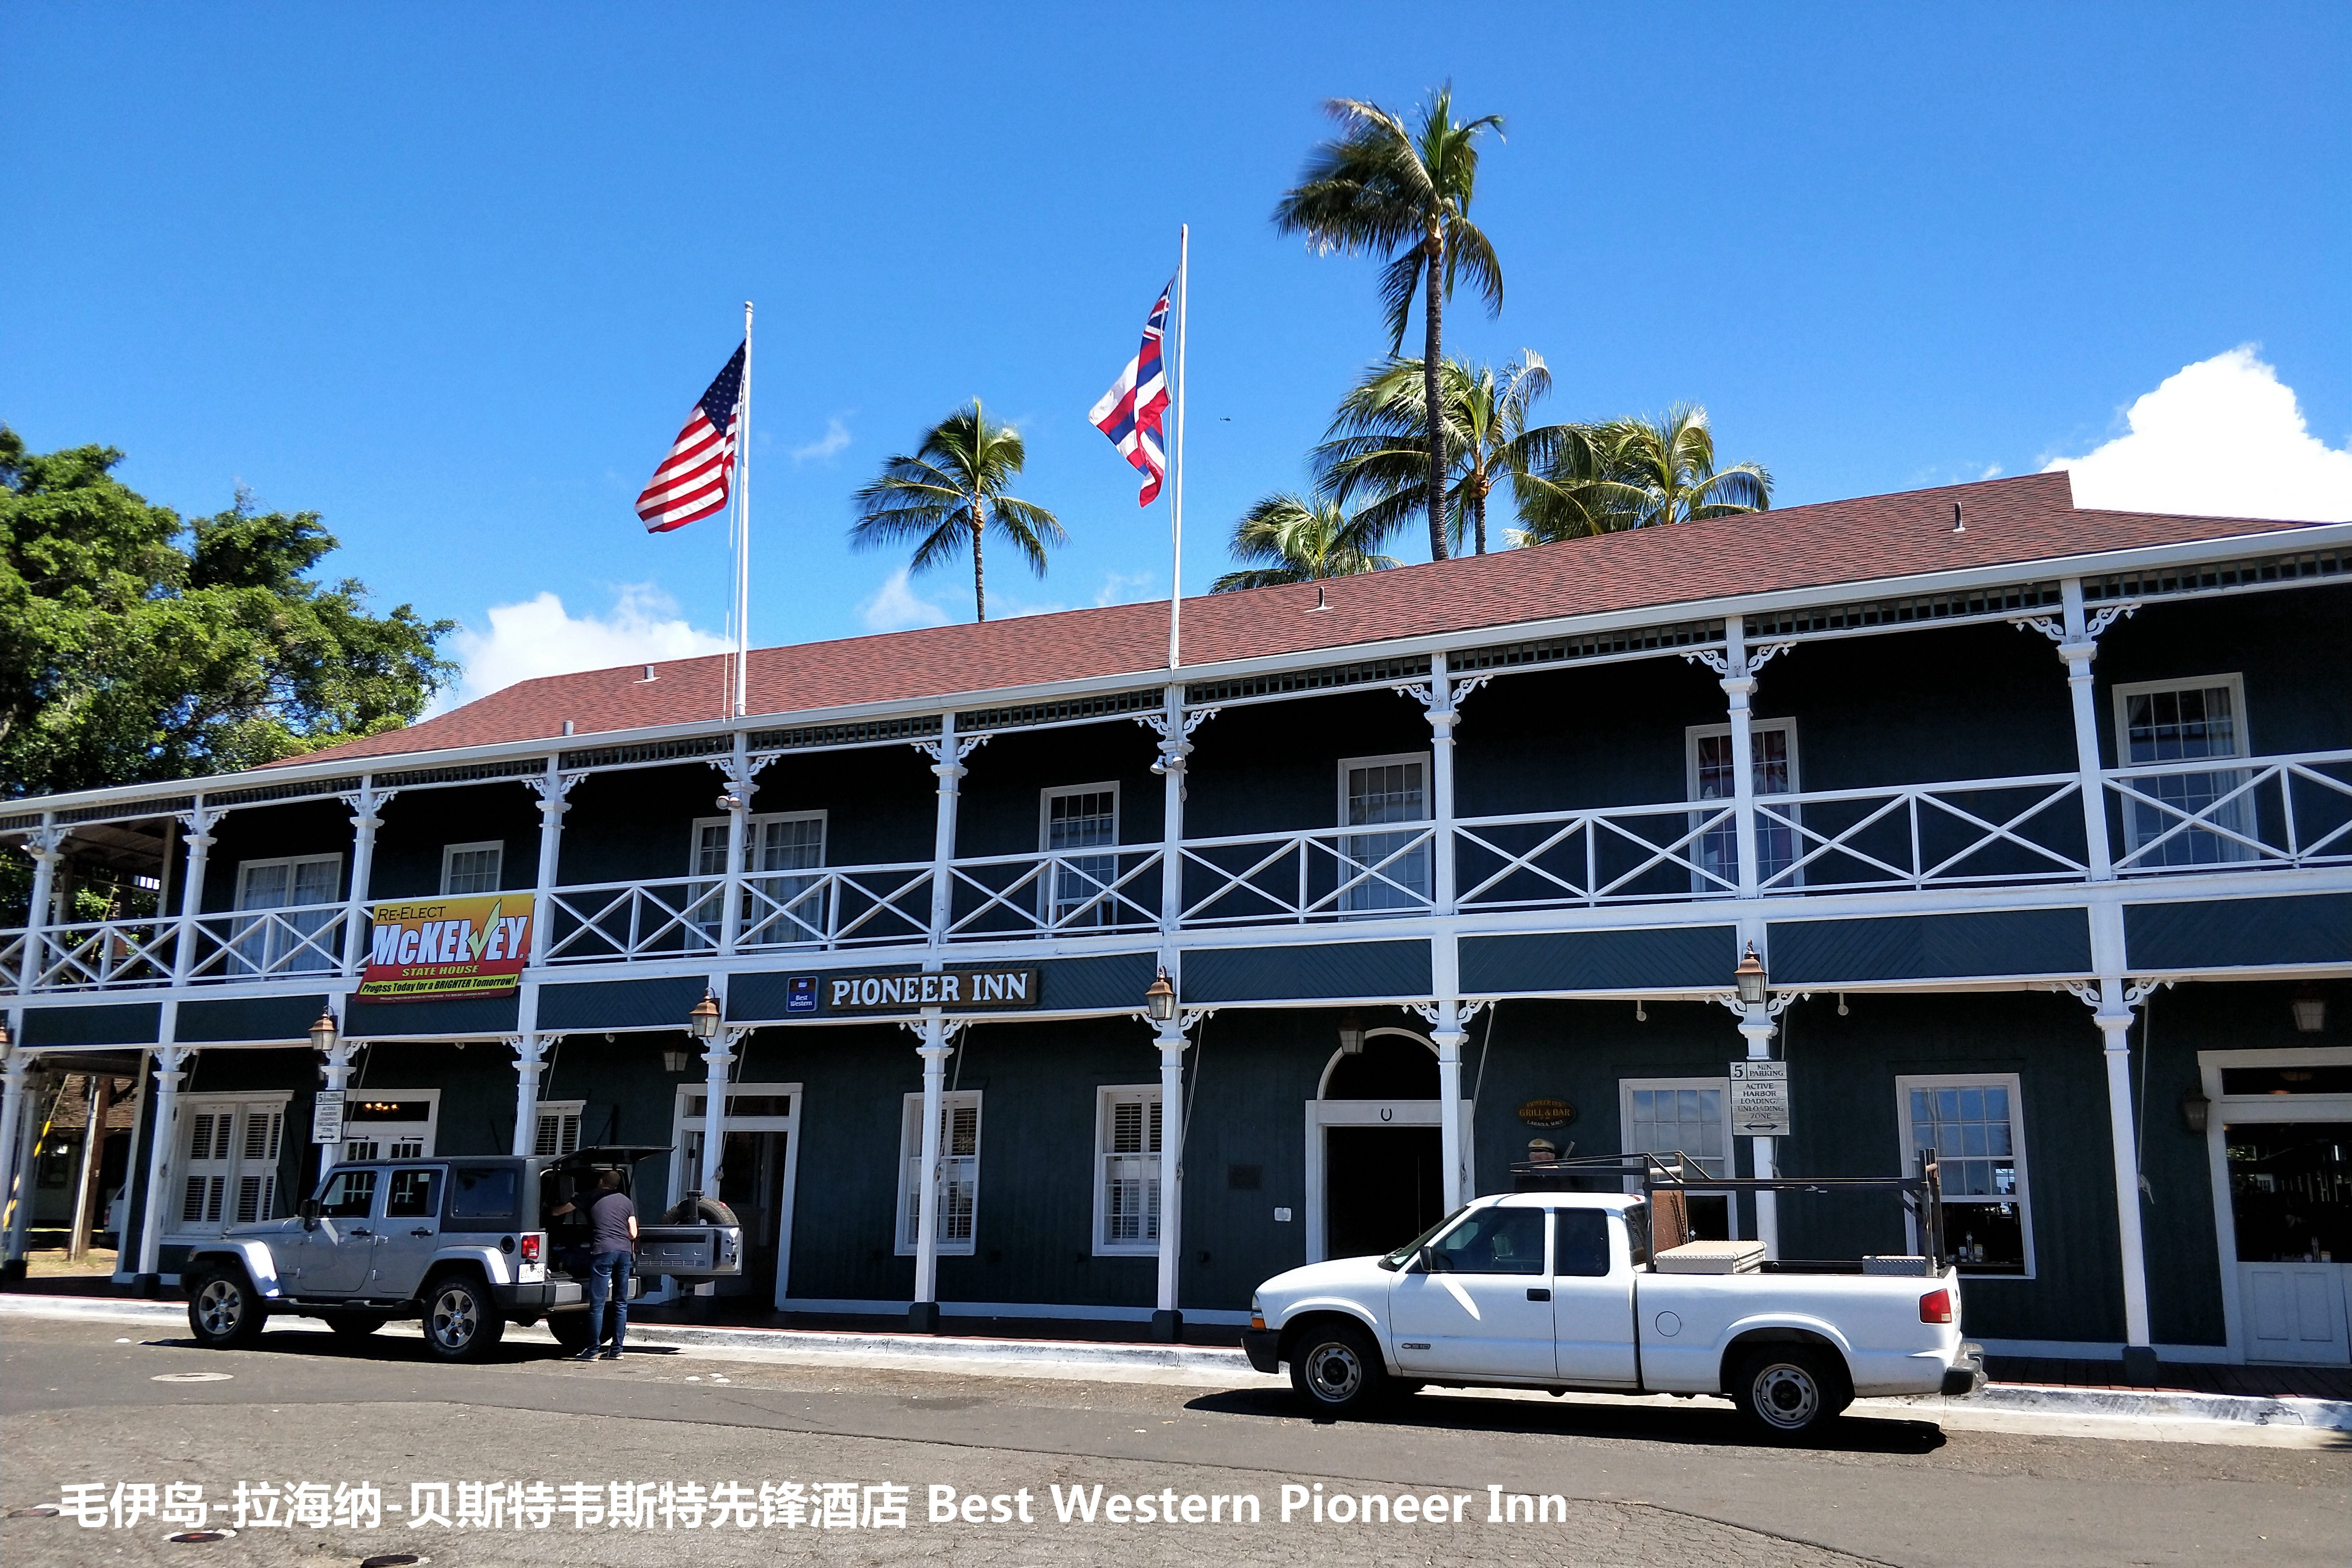 我以贝斯特韦斯特先锋酒店Best Western Pioneer Inn作为目的地，跟着导航很快到了